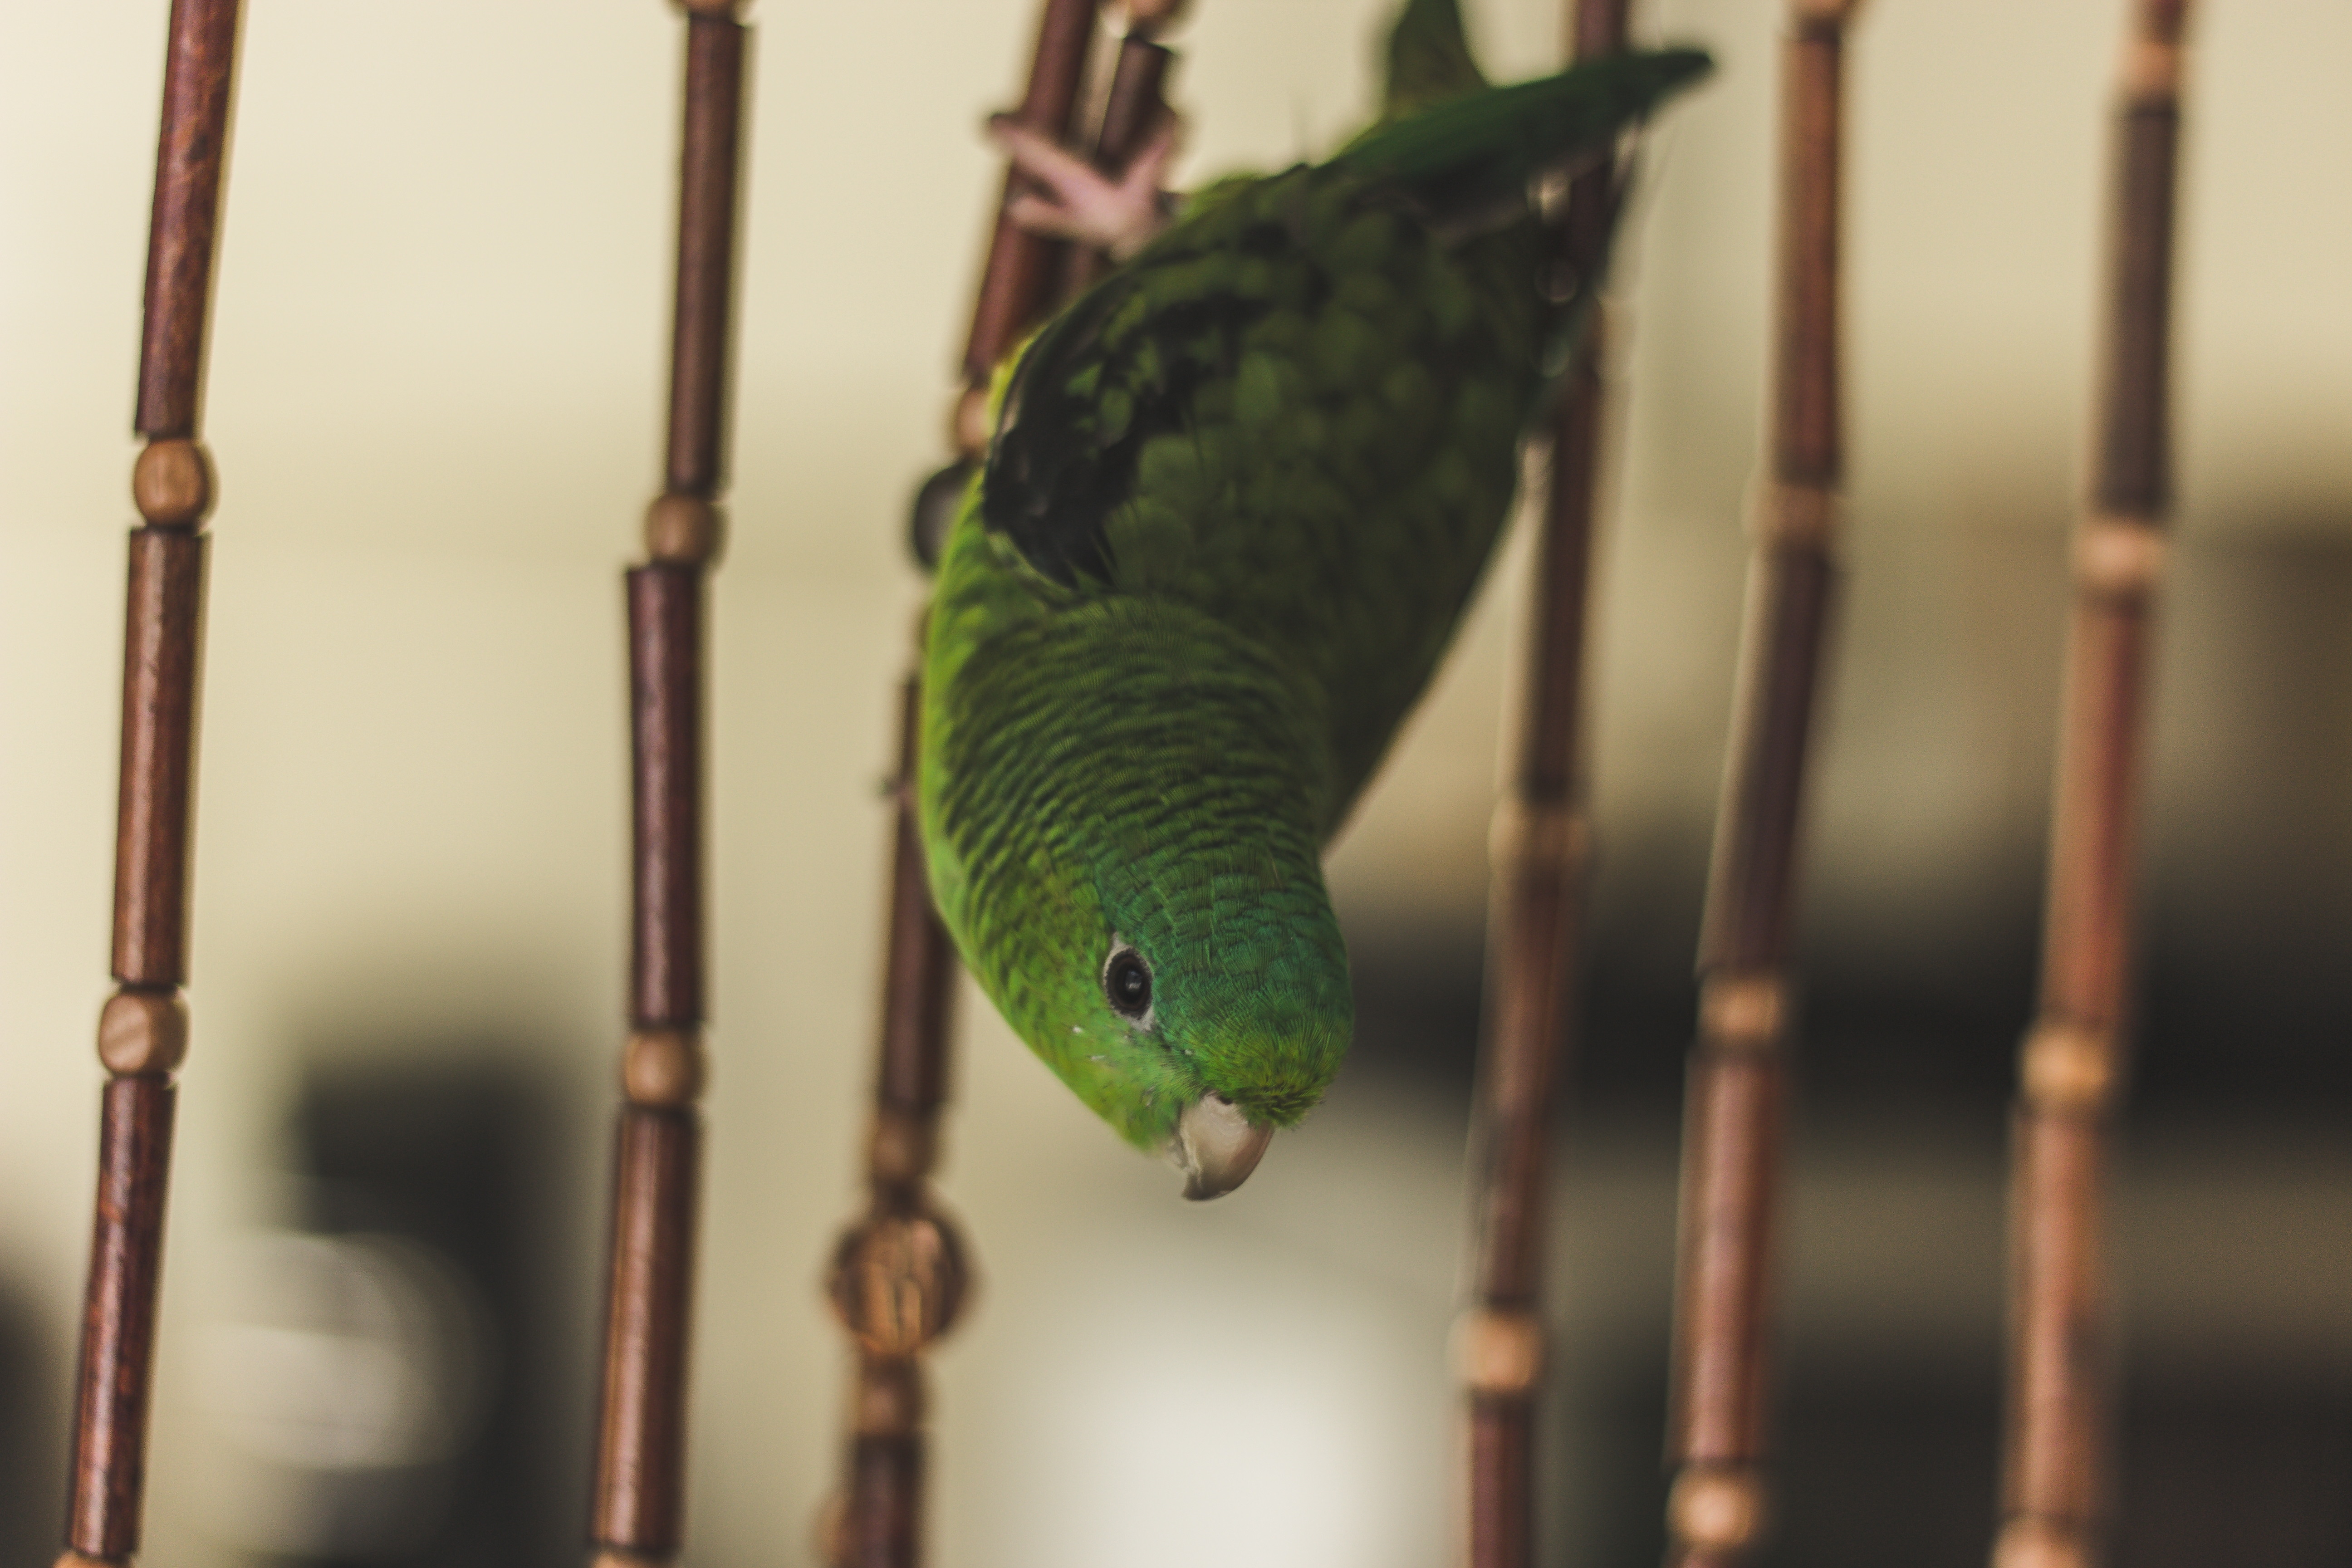 Зеленый попугай сидит в клетке вниз головой · бесплатная фотография